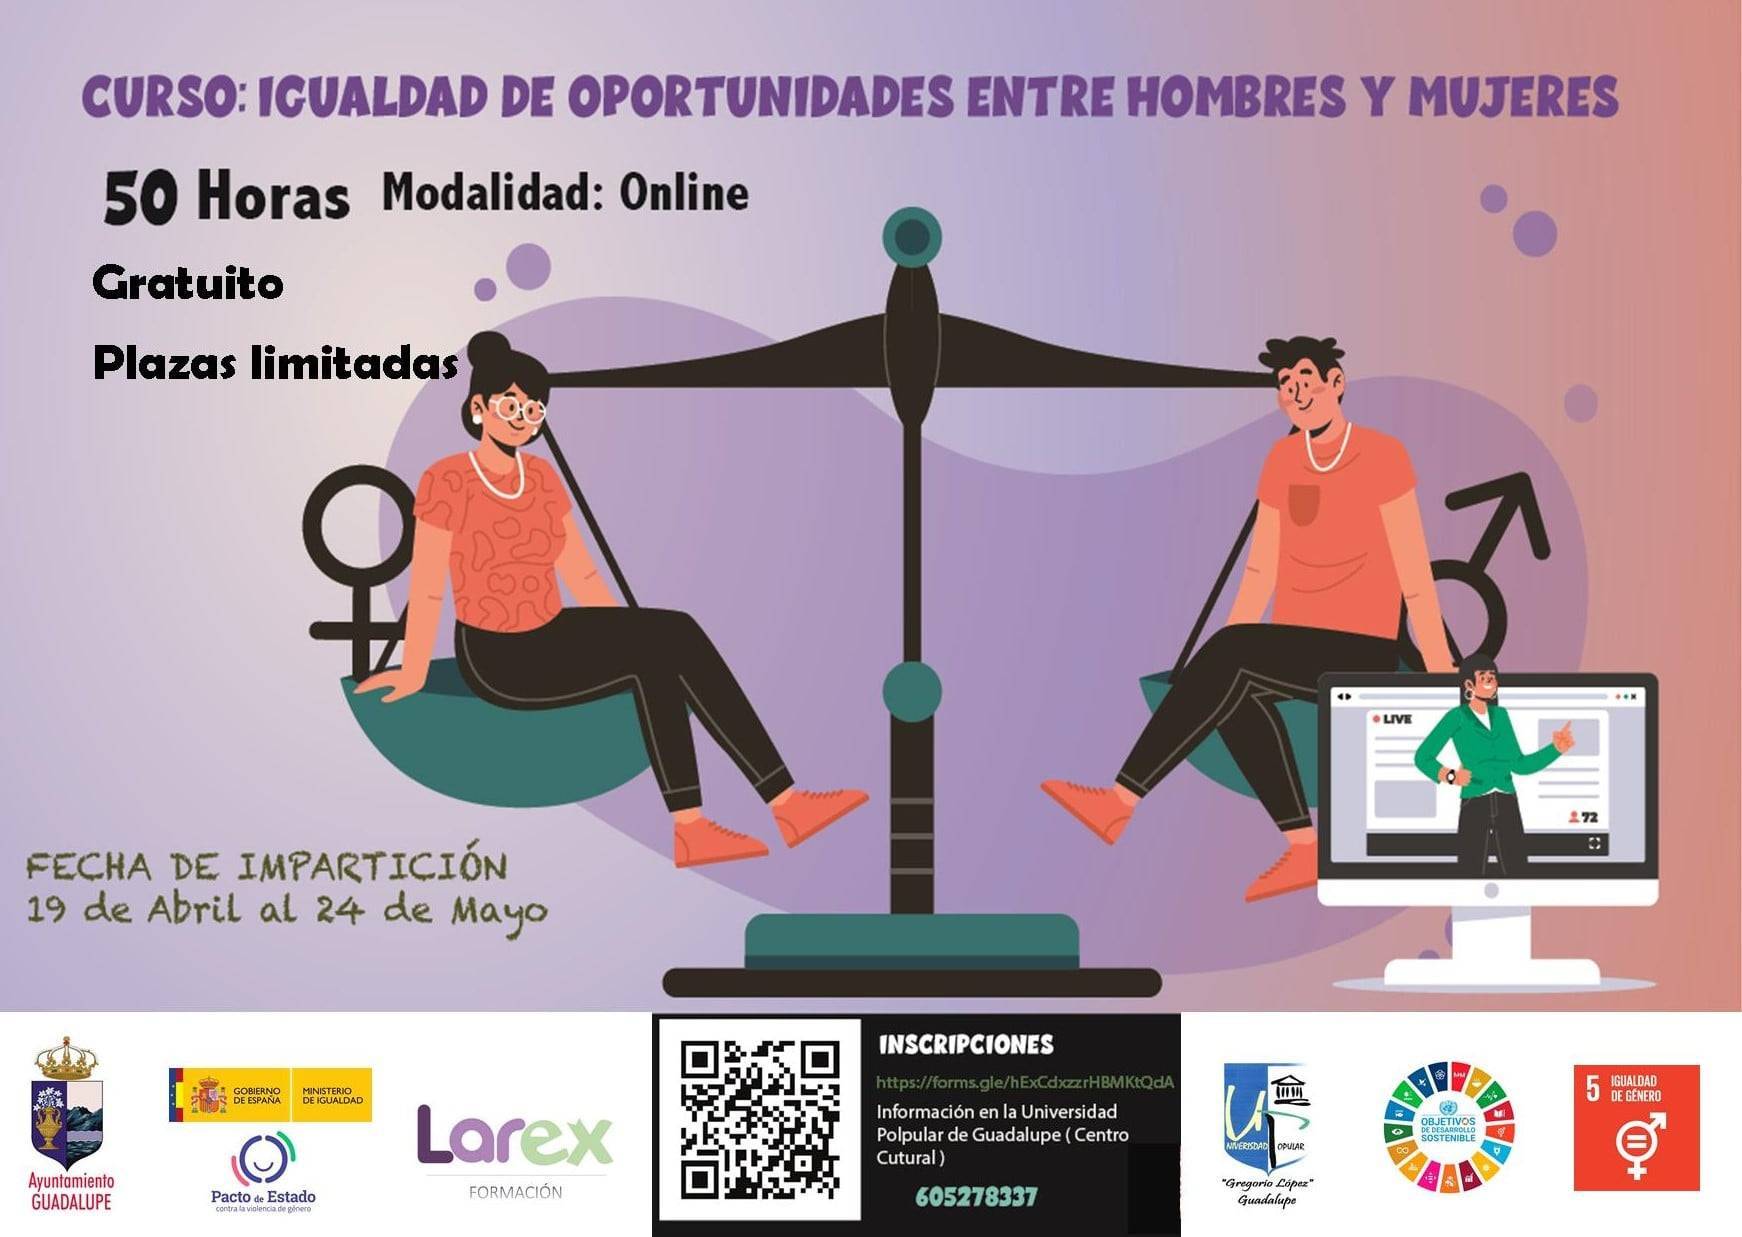 Curso de igualdad de oportunidades entre hombres y mujeres (2021) - Guadalupe (Cáceres)